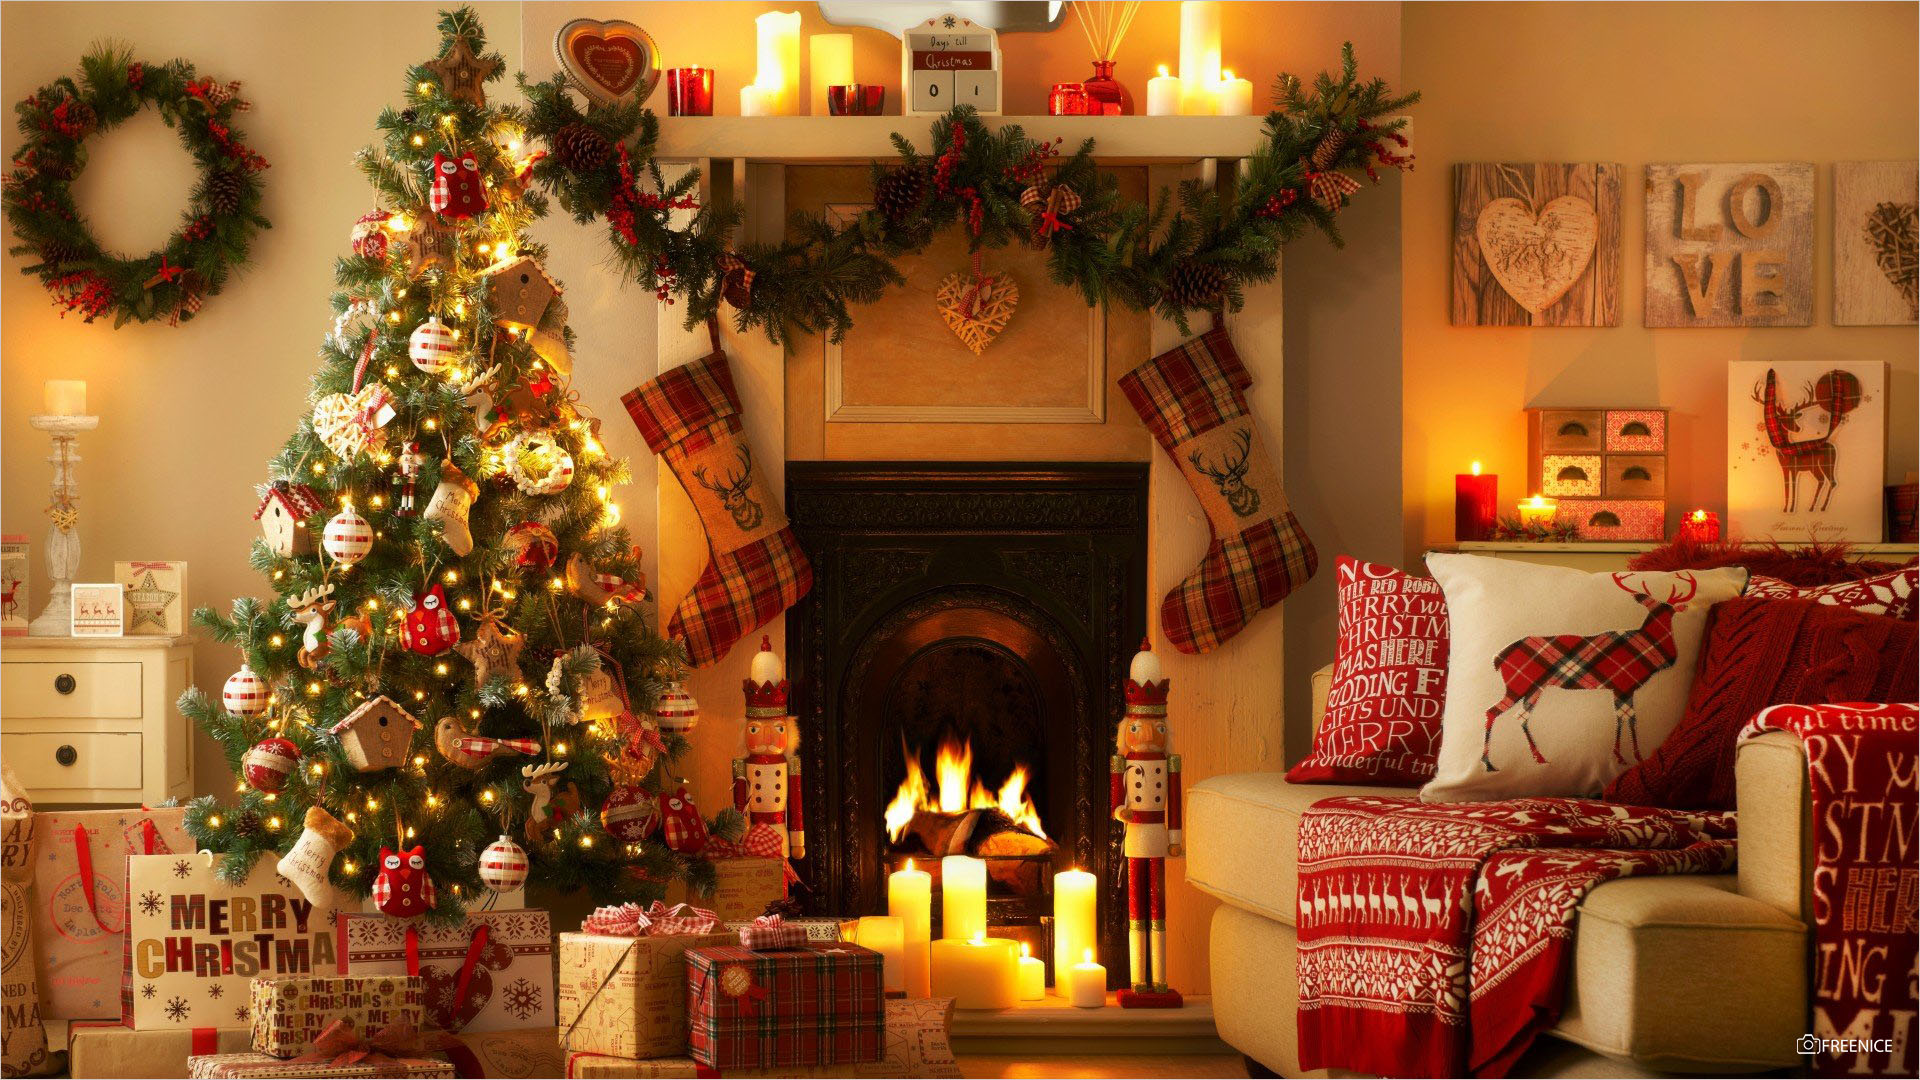 Hình nền giáng sinh cực đẹp sẽ khiến cho mọi người phải trầm trồ khi bước vào phòng của bạn. Những hình ảnh rực rỡ và sáng tạo sẽ đem lại cho bạn một mùa giáng sinh đáng nhớ.